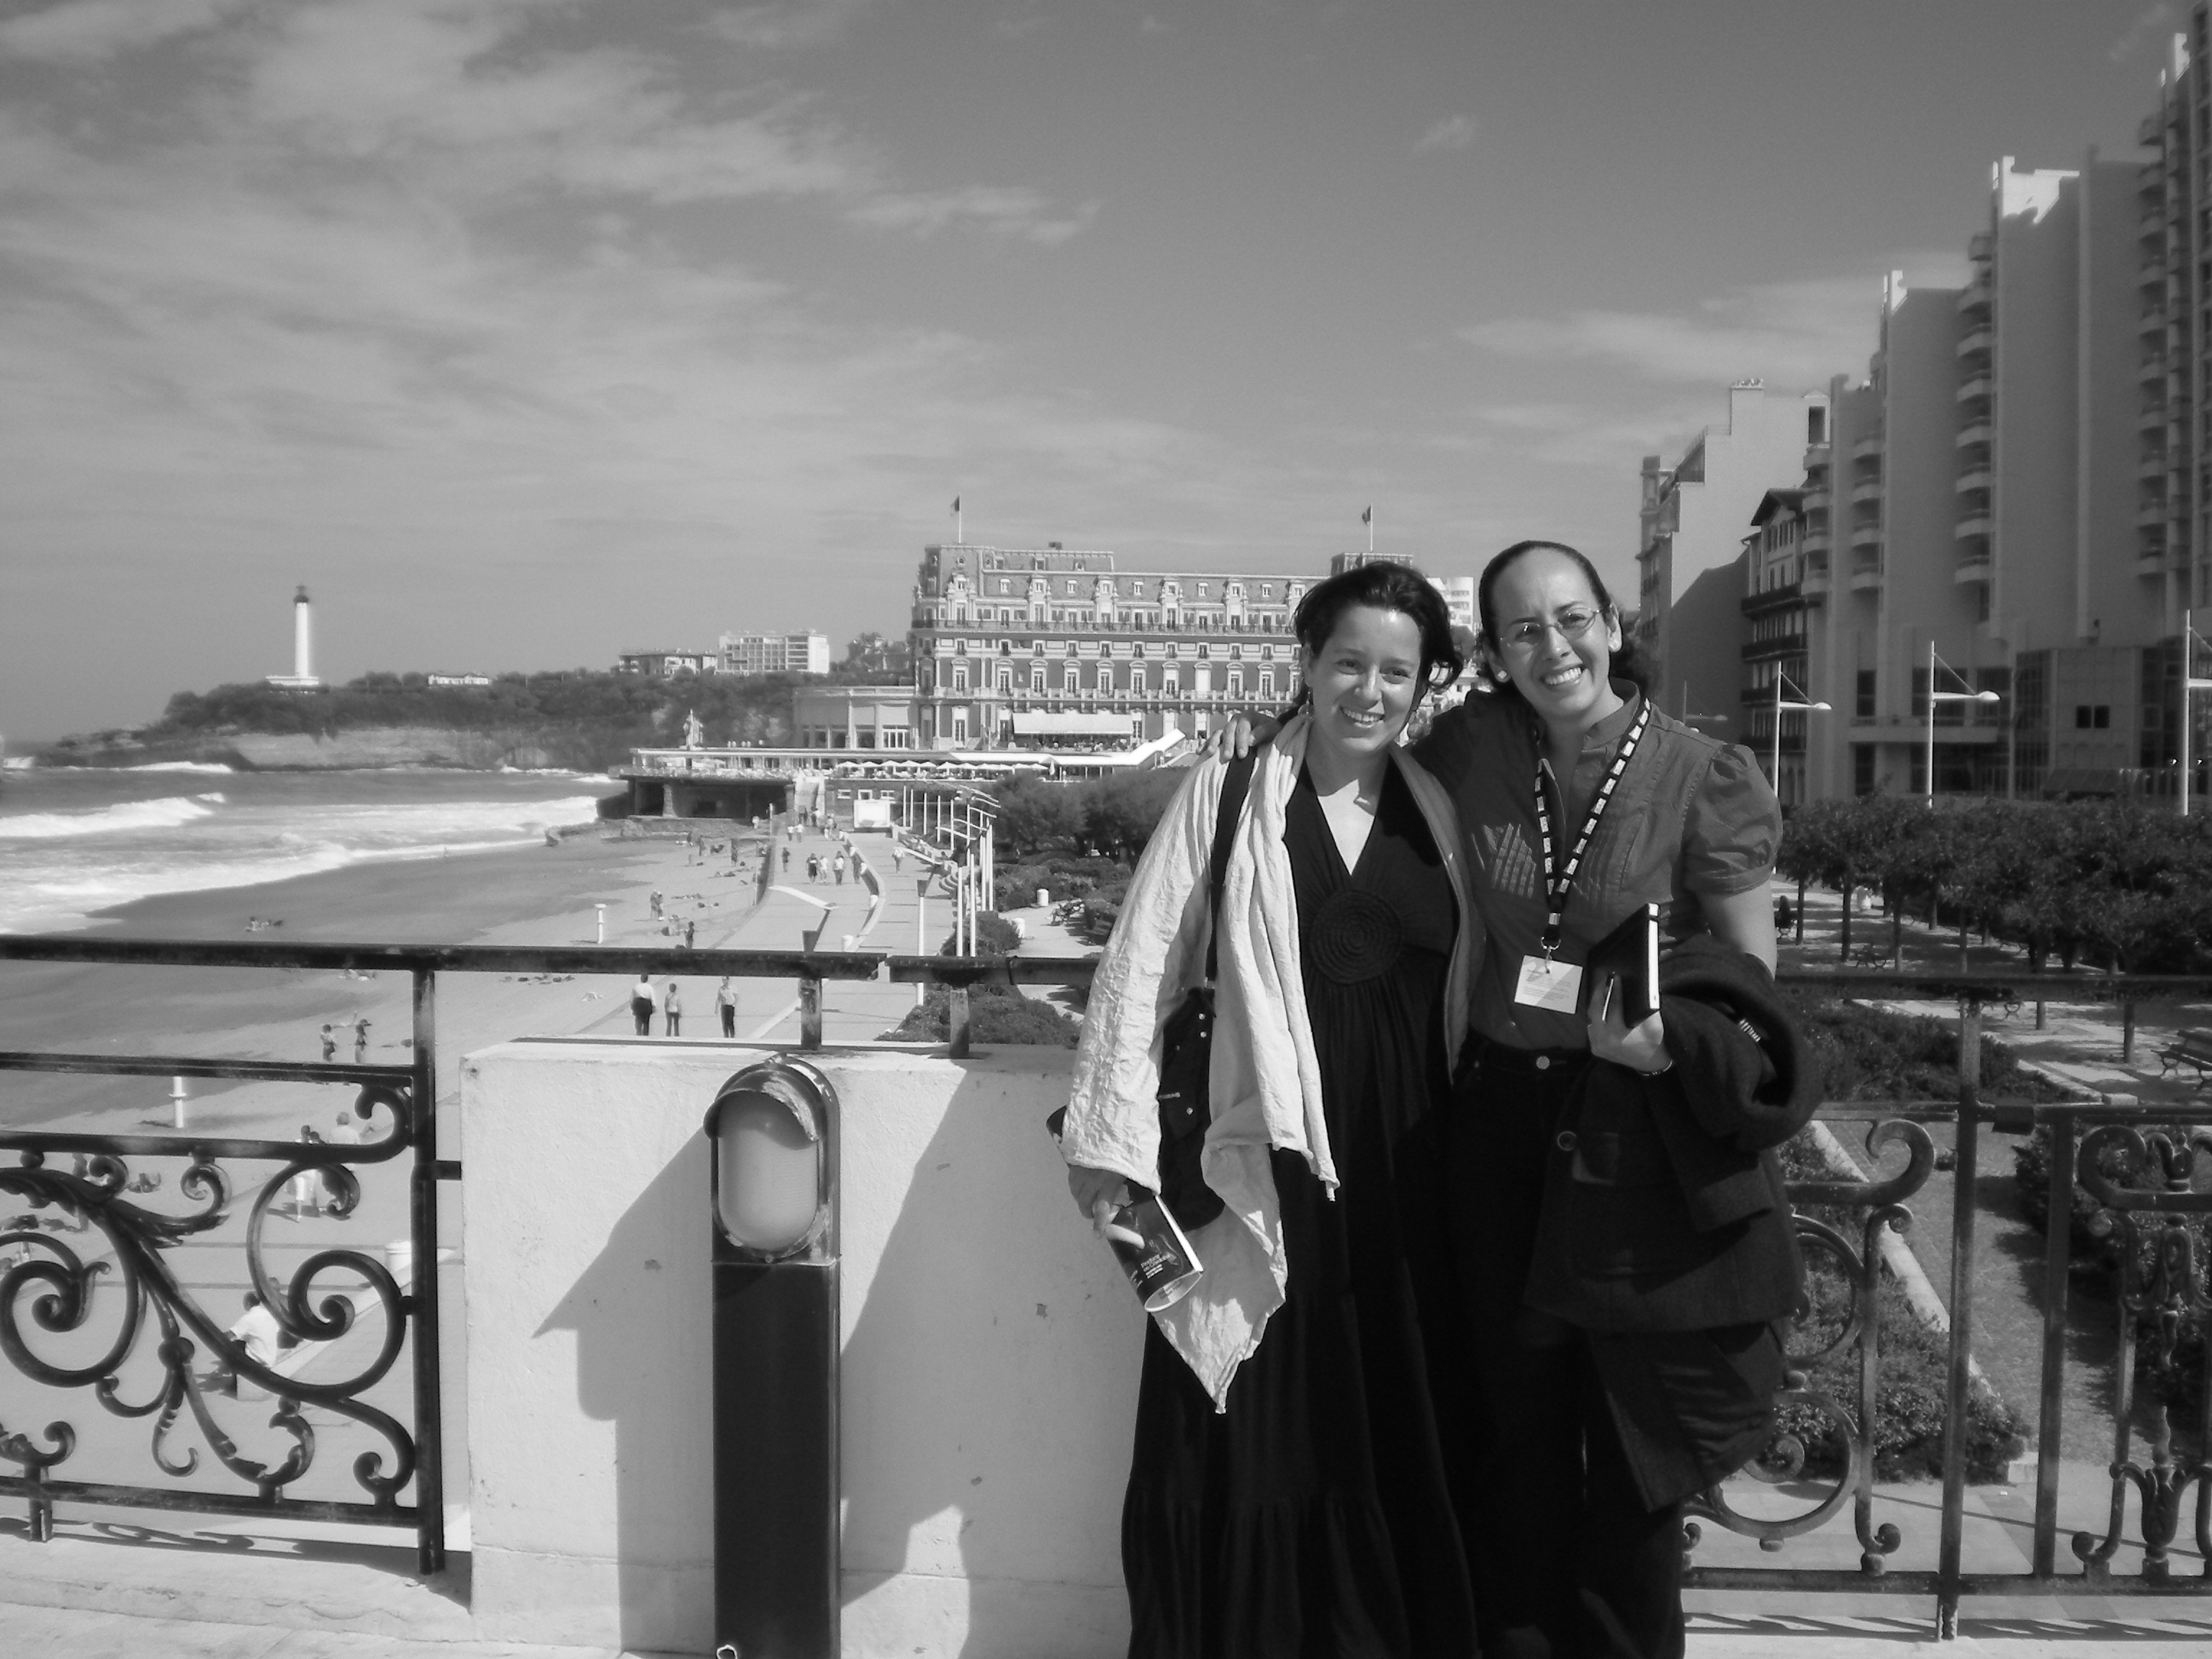 With Layda Negrete from Presunto Culpable, Festival de Biarritz, FRANCE (2010)